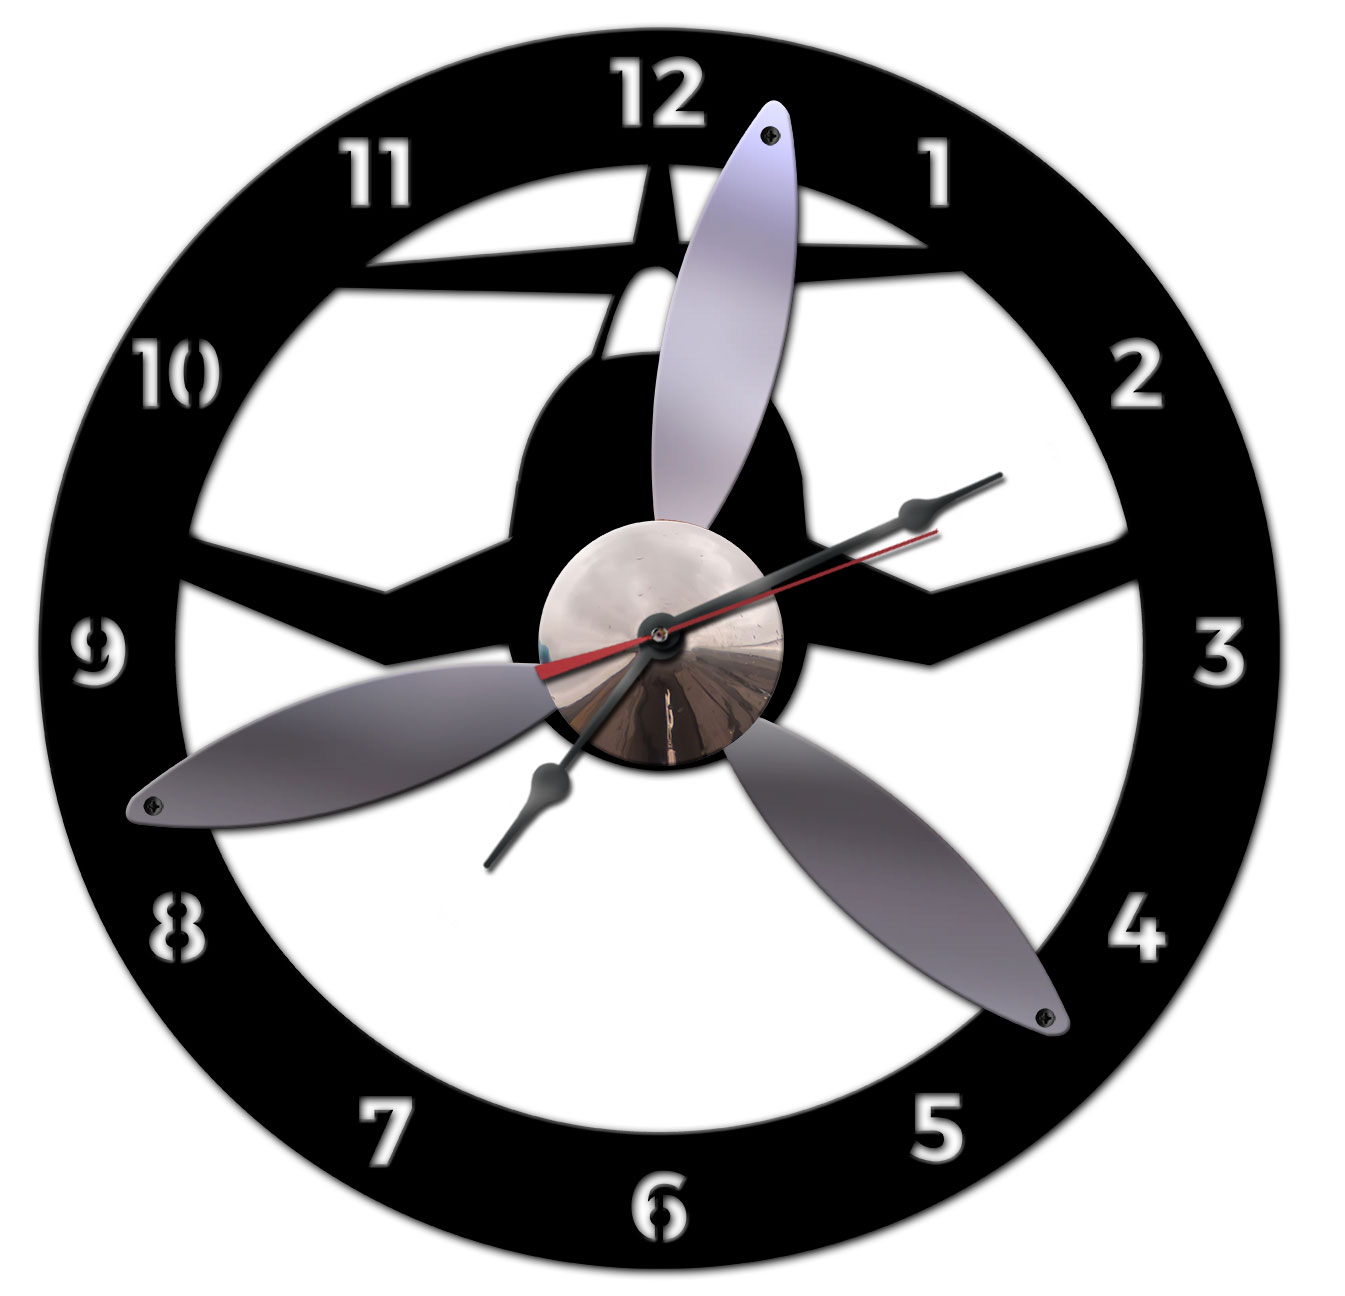 3D Silver Propeller Clock  Vintage Sign